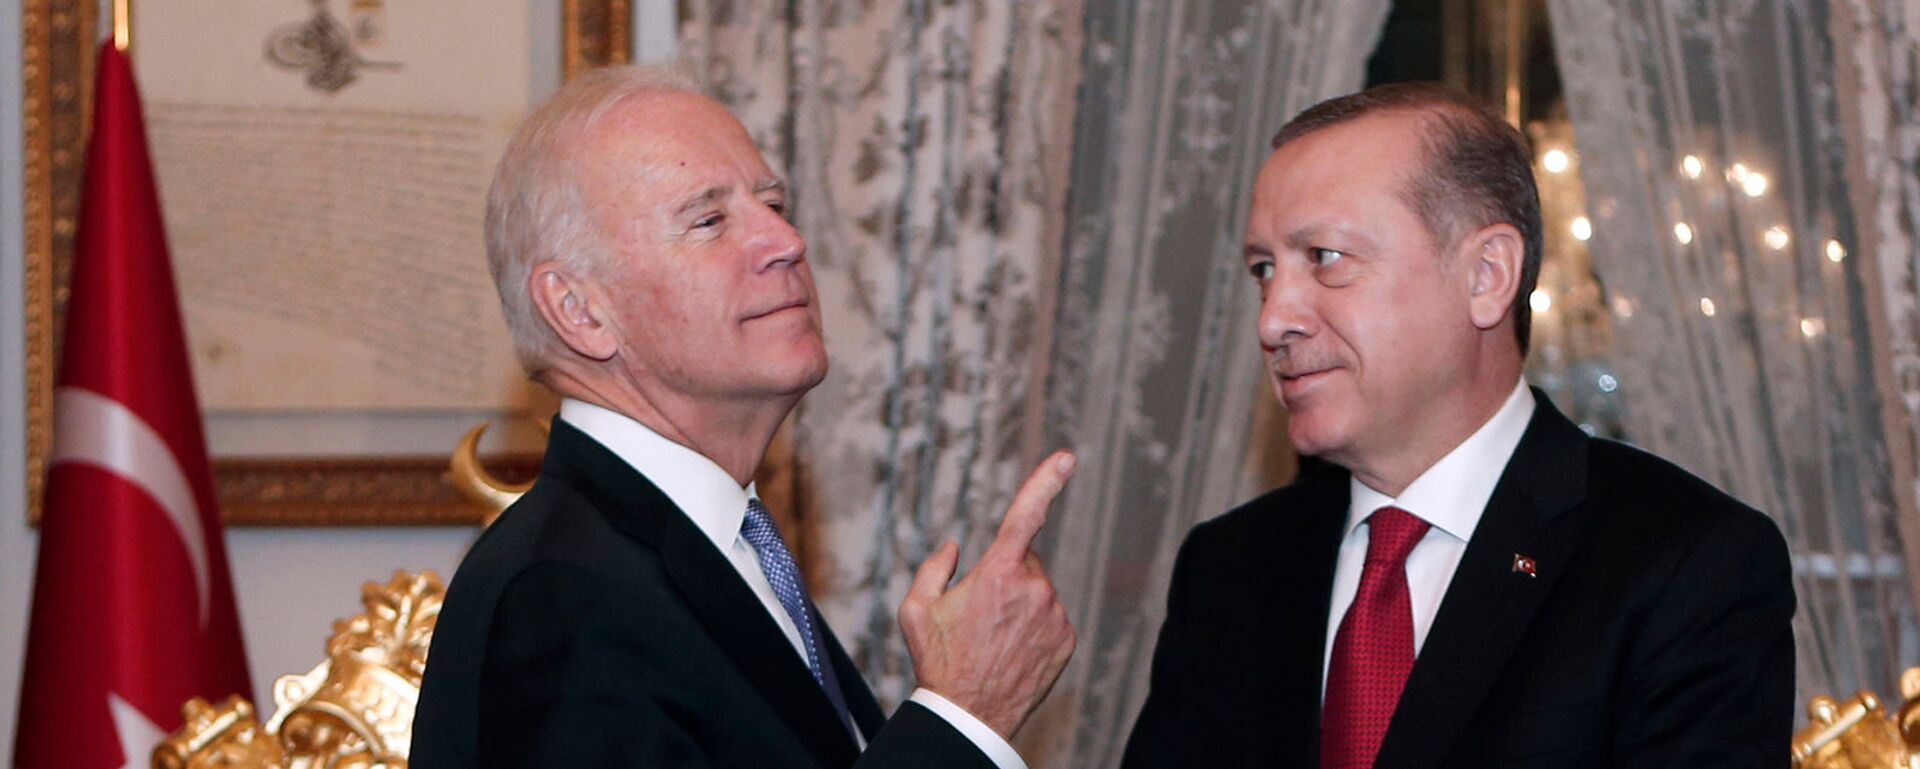 Беседа вице-президента США Джо Байдена с президентом Турции Реджепом Тайипом Эрдоганом после их встречи во Дворце Йылдыз Мабейн (23 января 2016). Стамбул - Sputnik Արմենիա, 1920, 02.06.2021